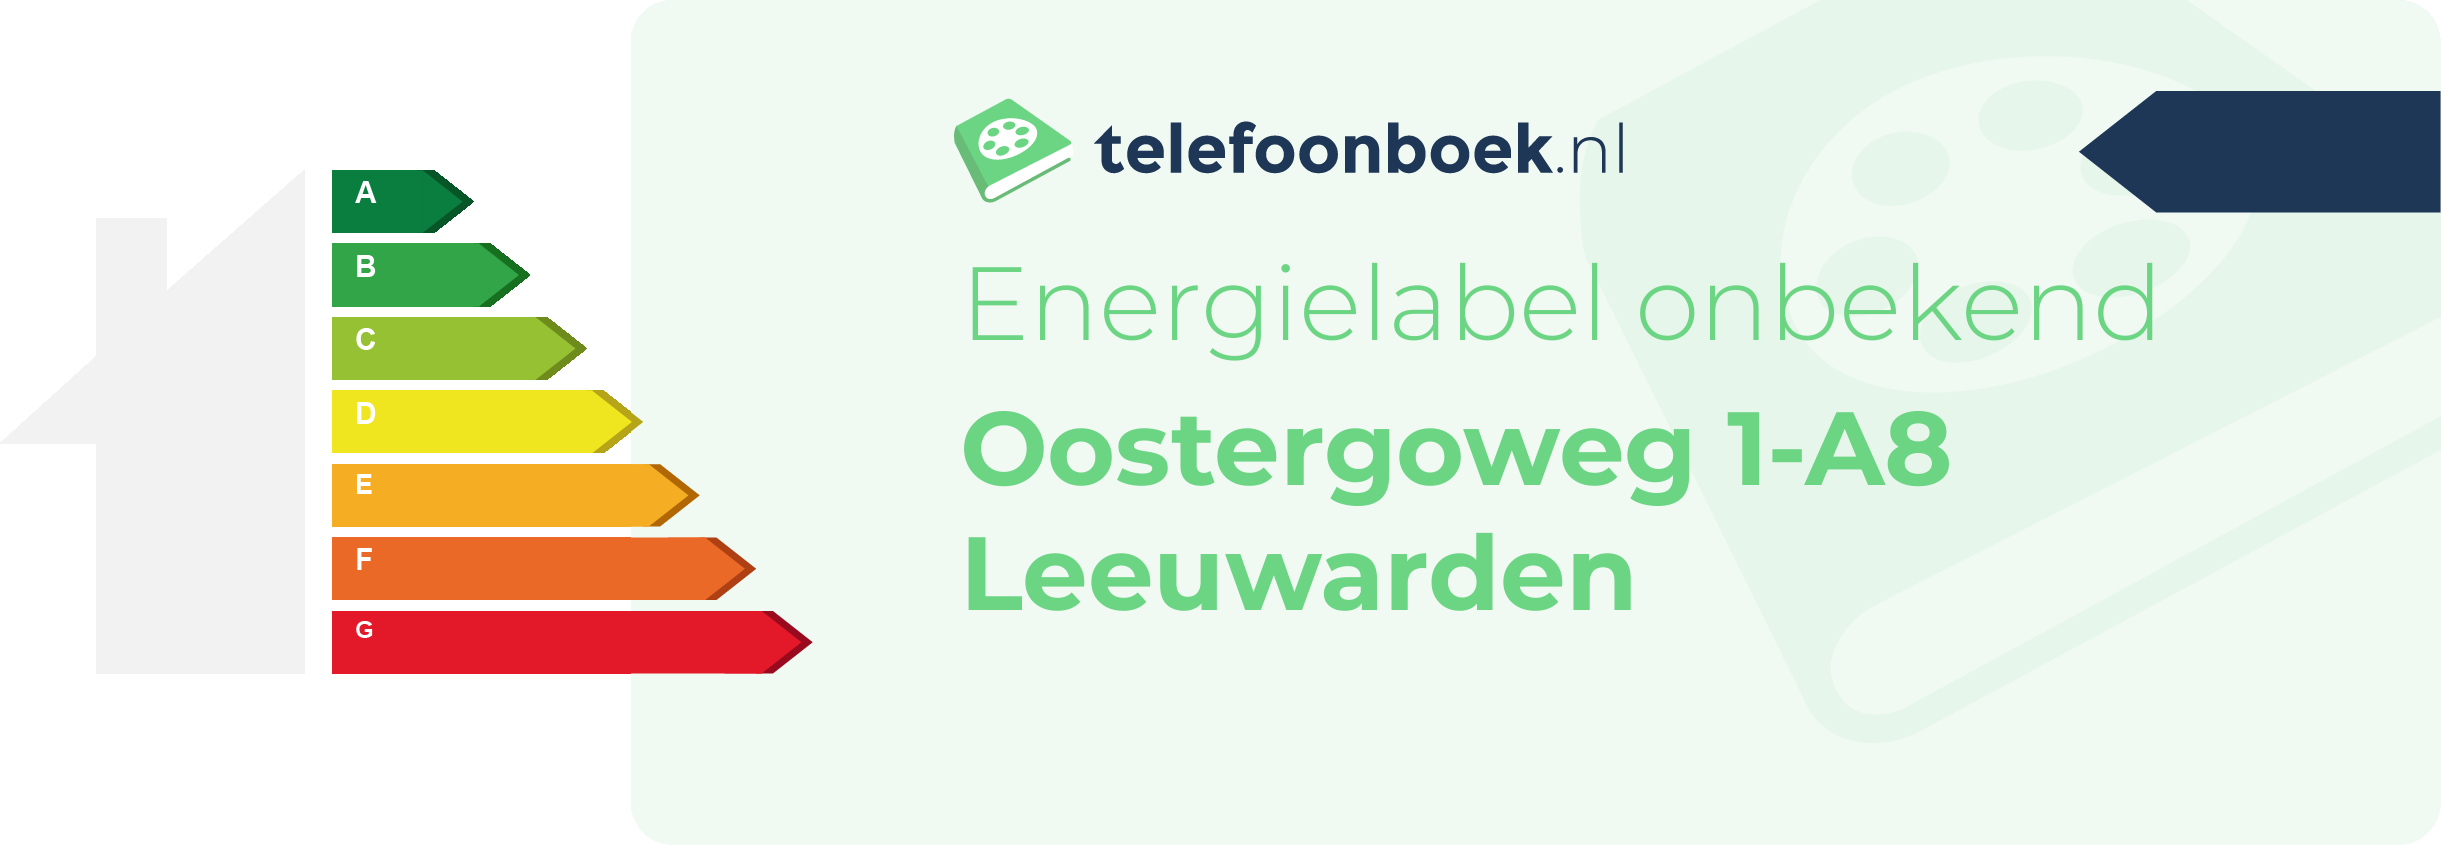 Energielabel Oostergoweg 1-A8 Leeuwarden